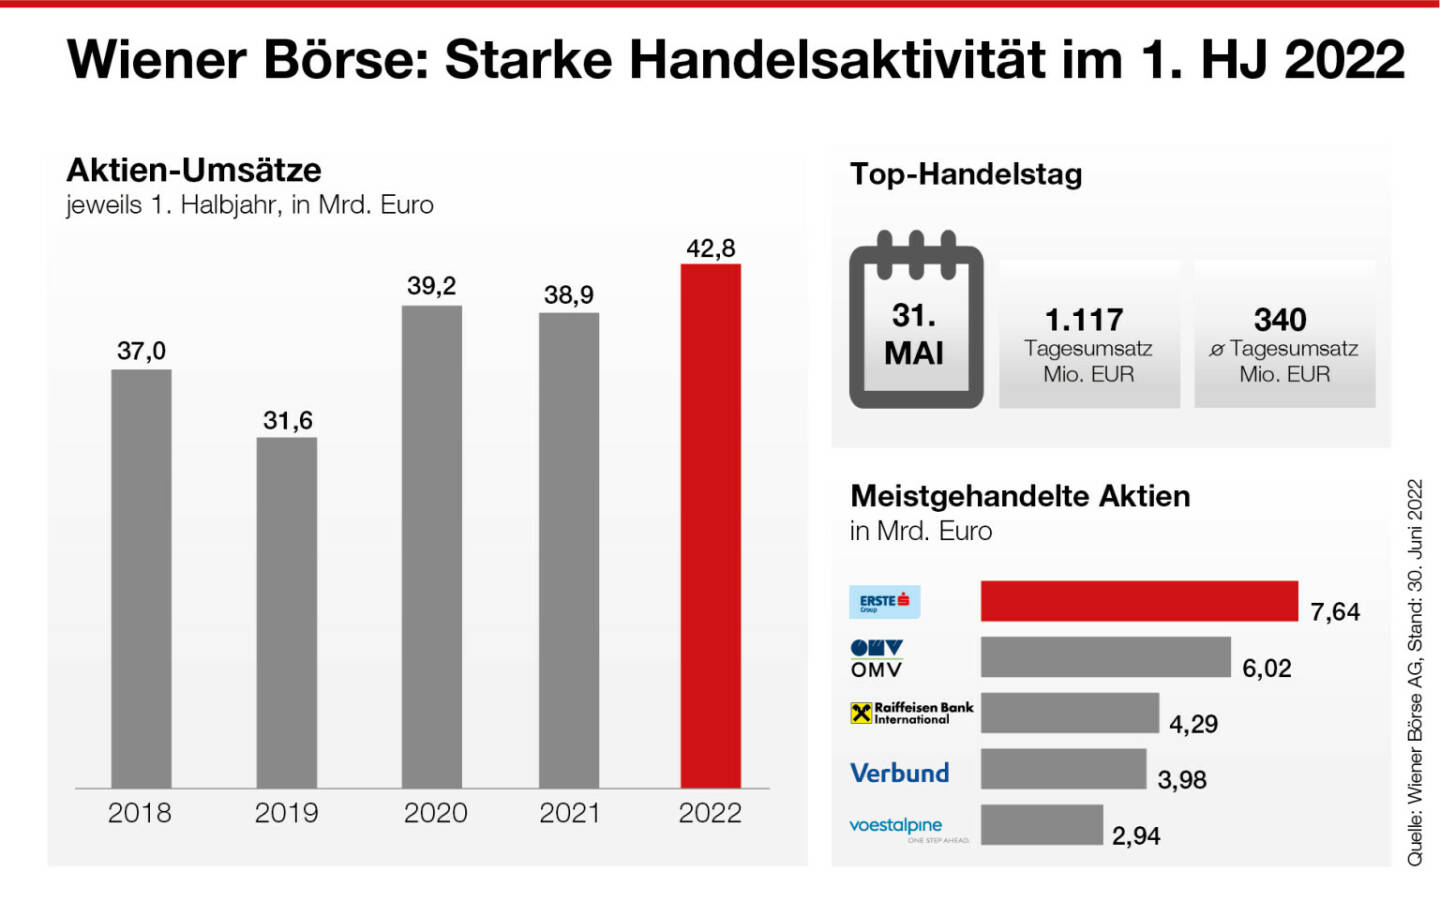 Aktien-Umsätze 1. Halbjahr 2022, Wiener Börse